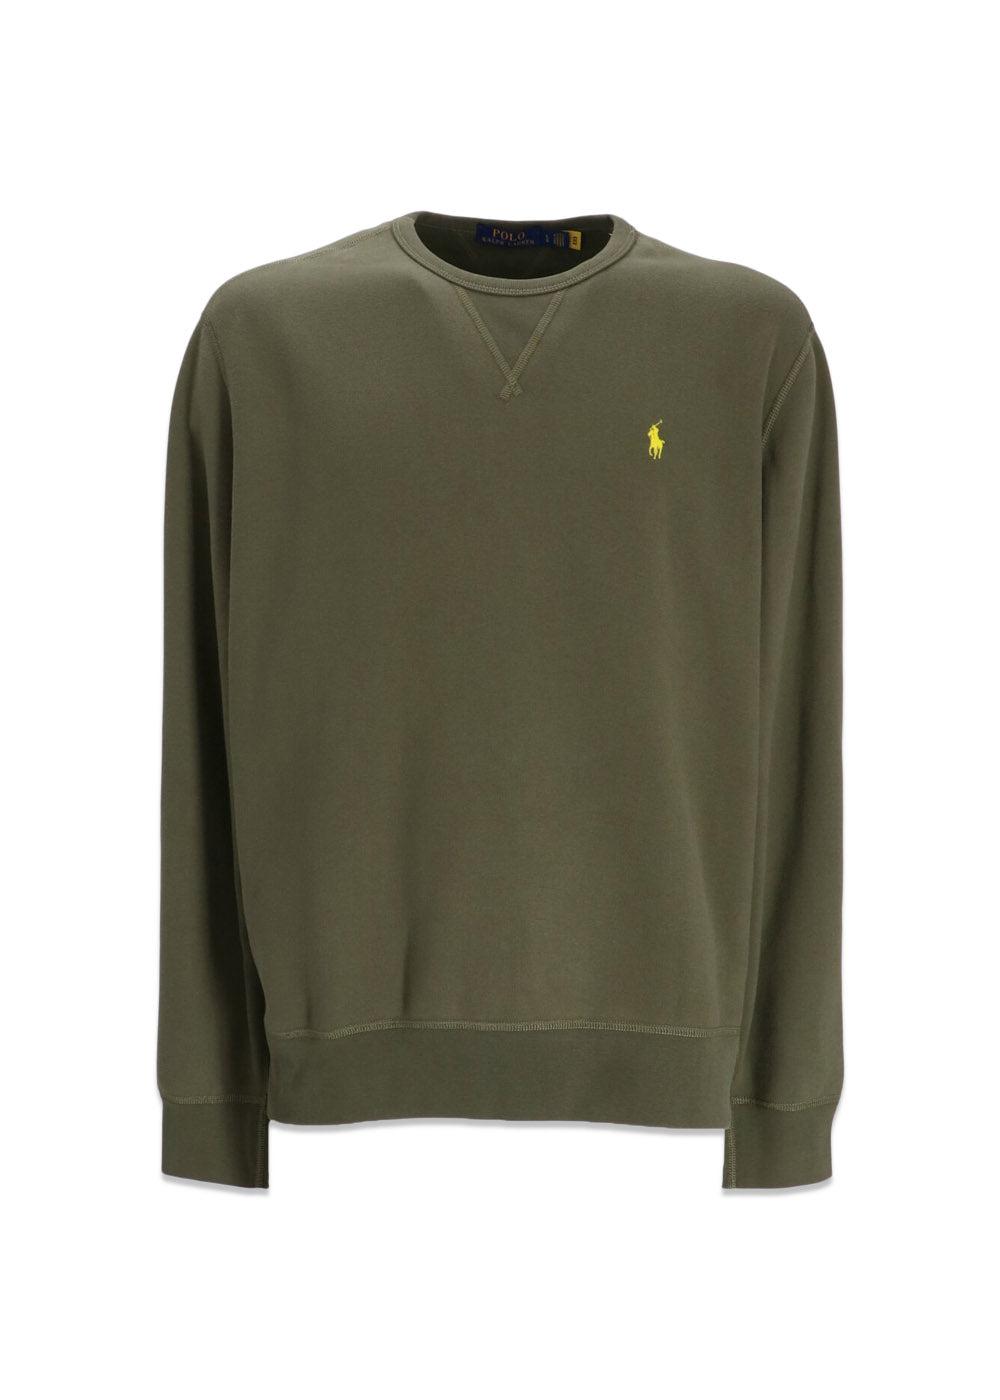 Ralph Laurens Fleece Long Sleeve - Dark Green. Køb sweatshirts her.